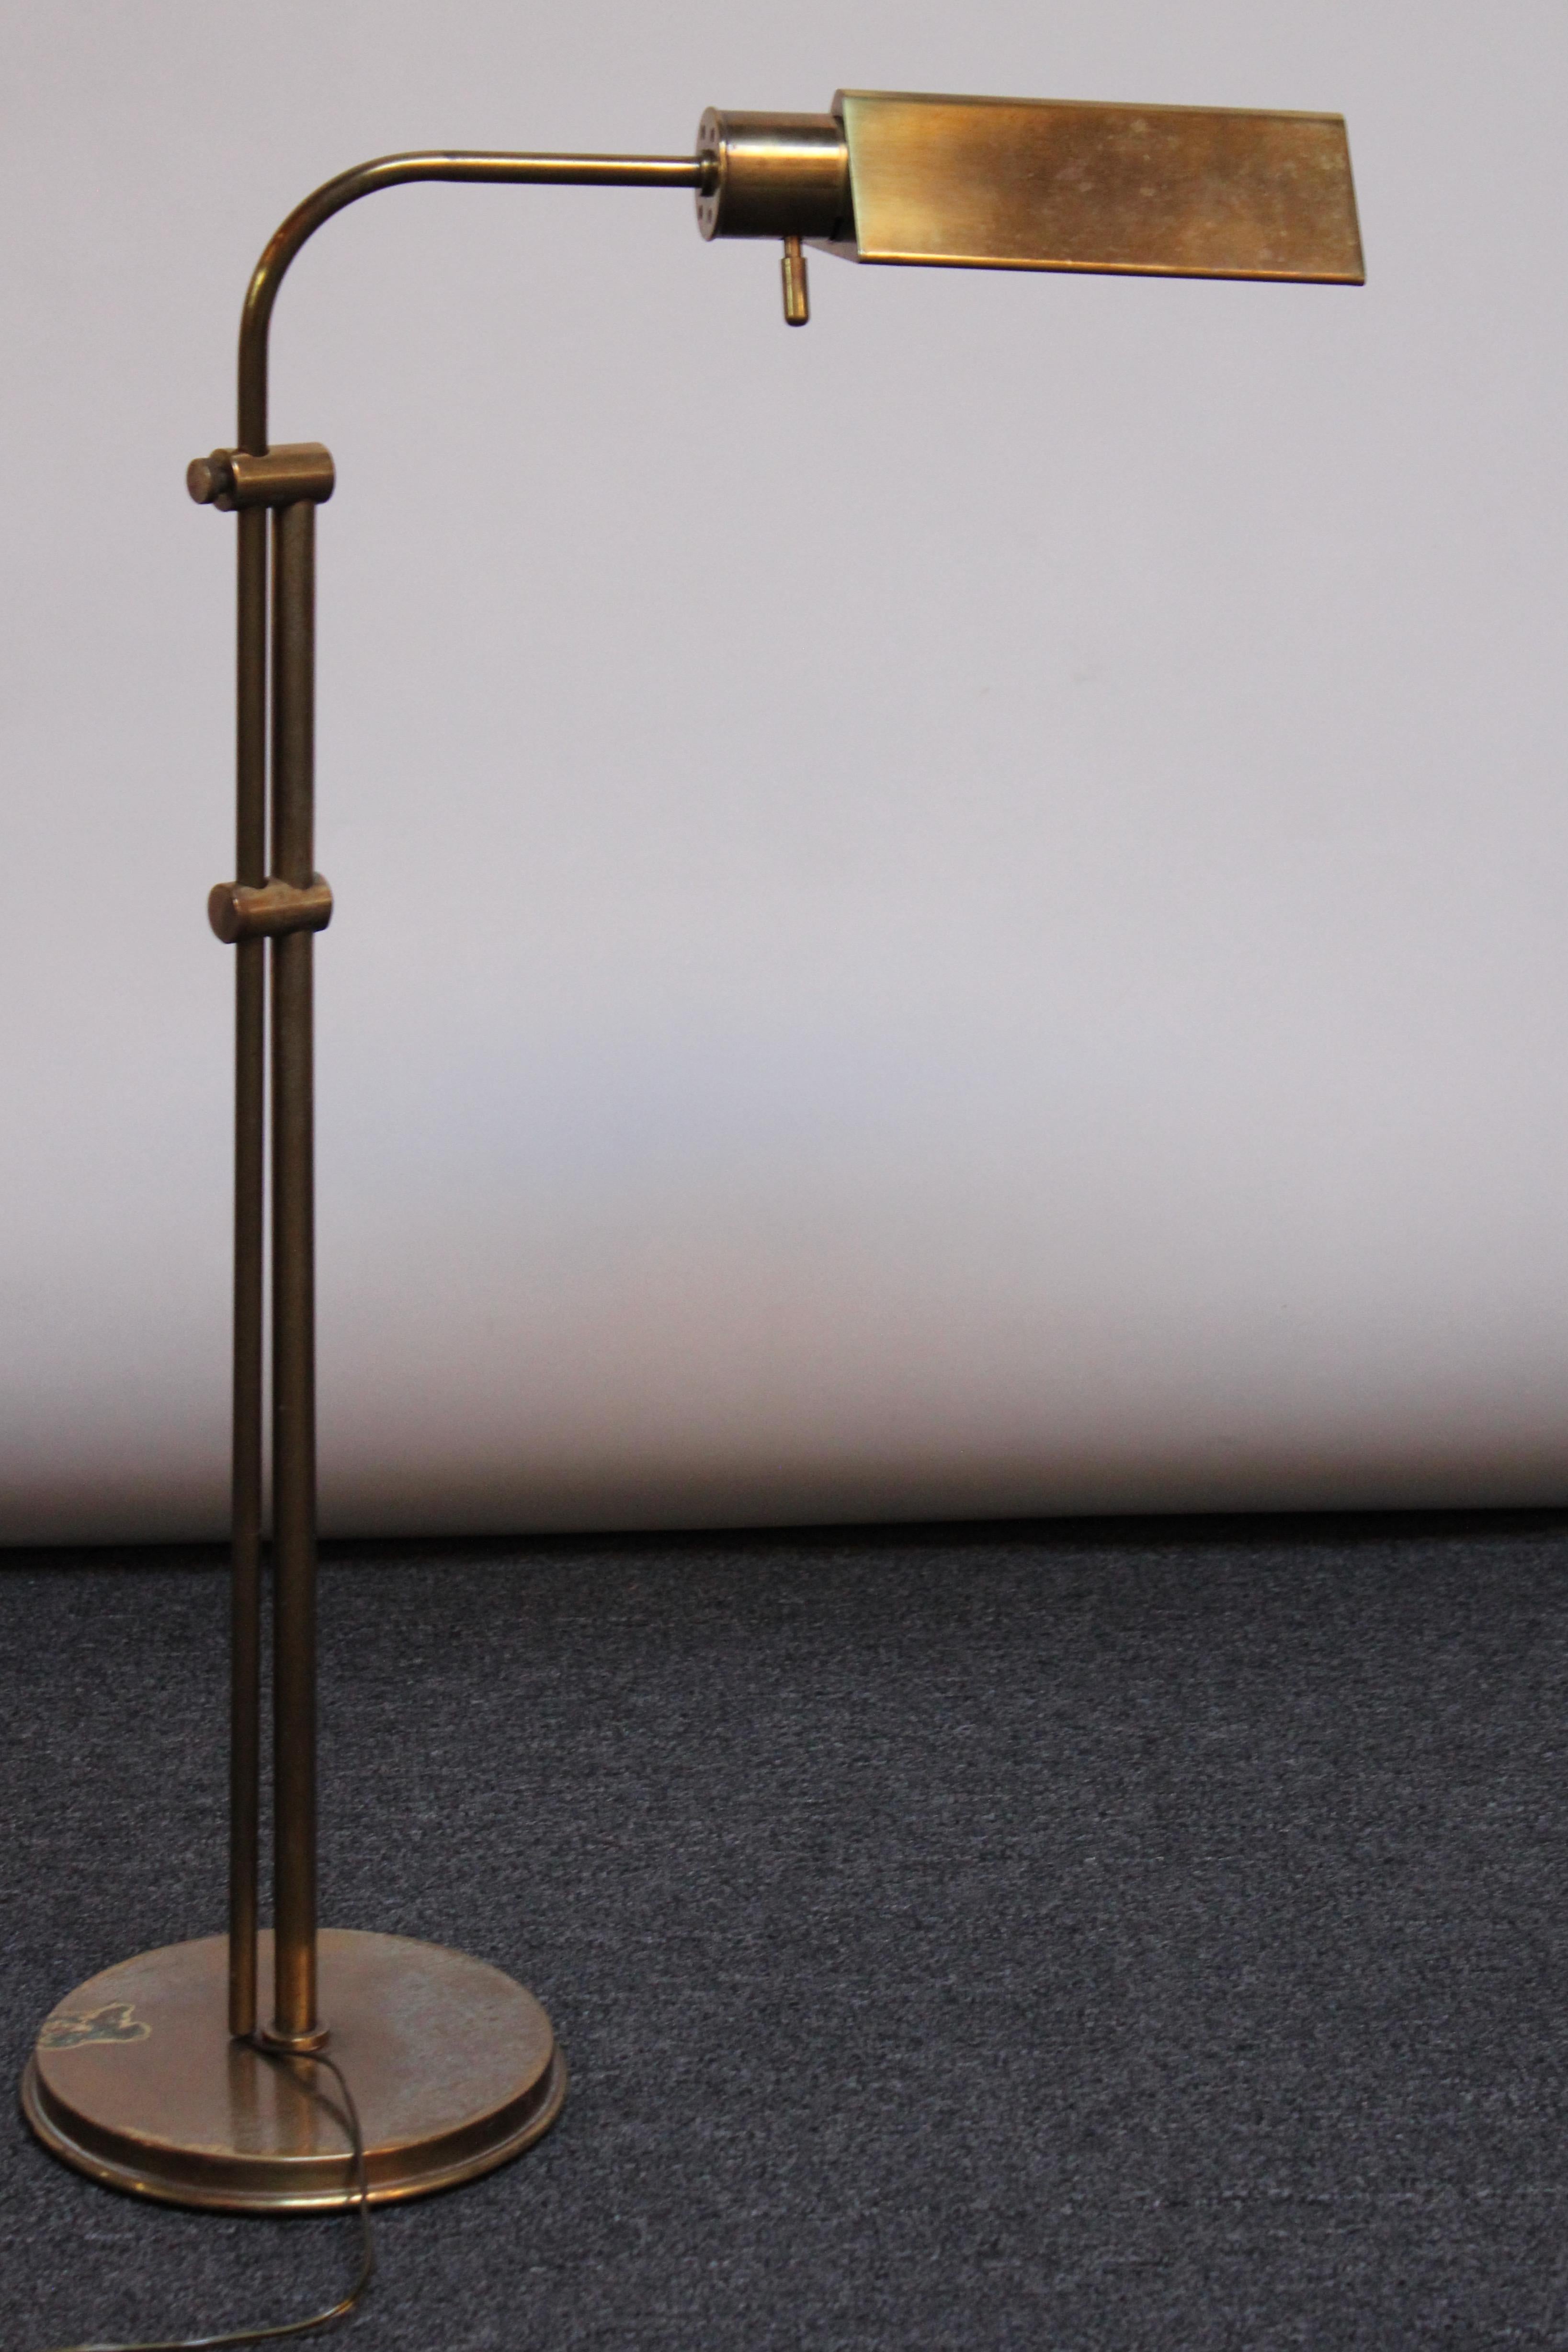 Lampadaire Chapman en laiton avec abat-jour triangulaire, base ronde et interrupteur 'capsule' (1970, USA). L'abat-jour est entièrement réglable, offrant une mobilité totale à 360 degrés, ainsi qu'un bras pivotant avec une hauteur totale réglable de